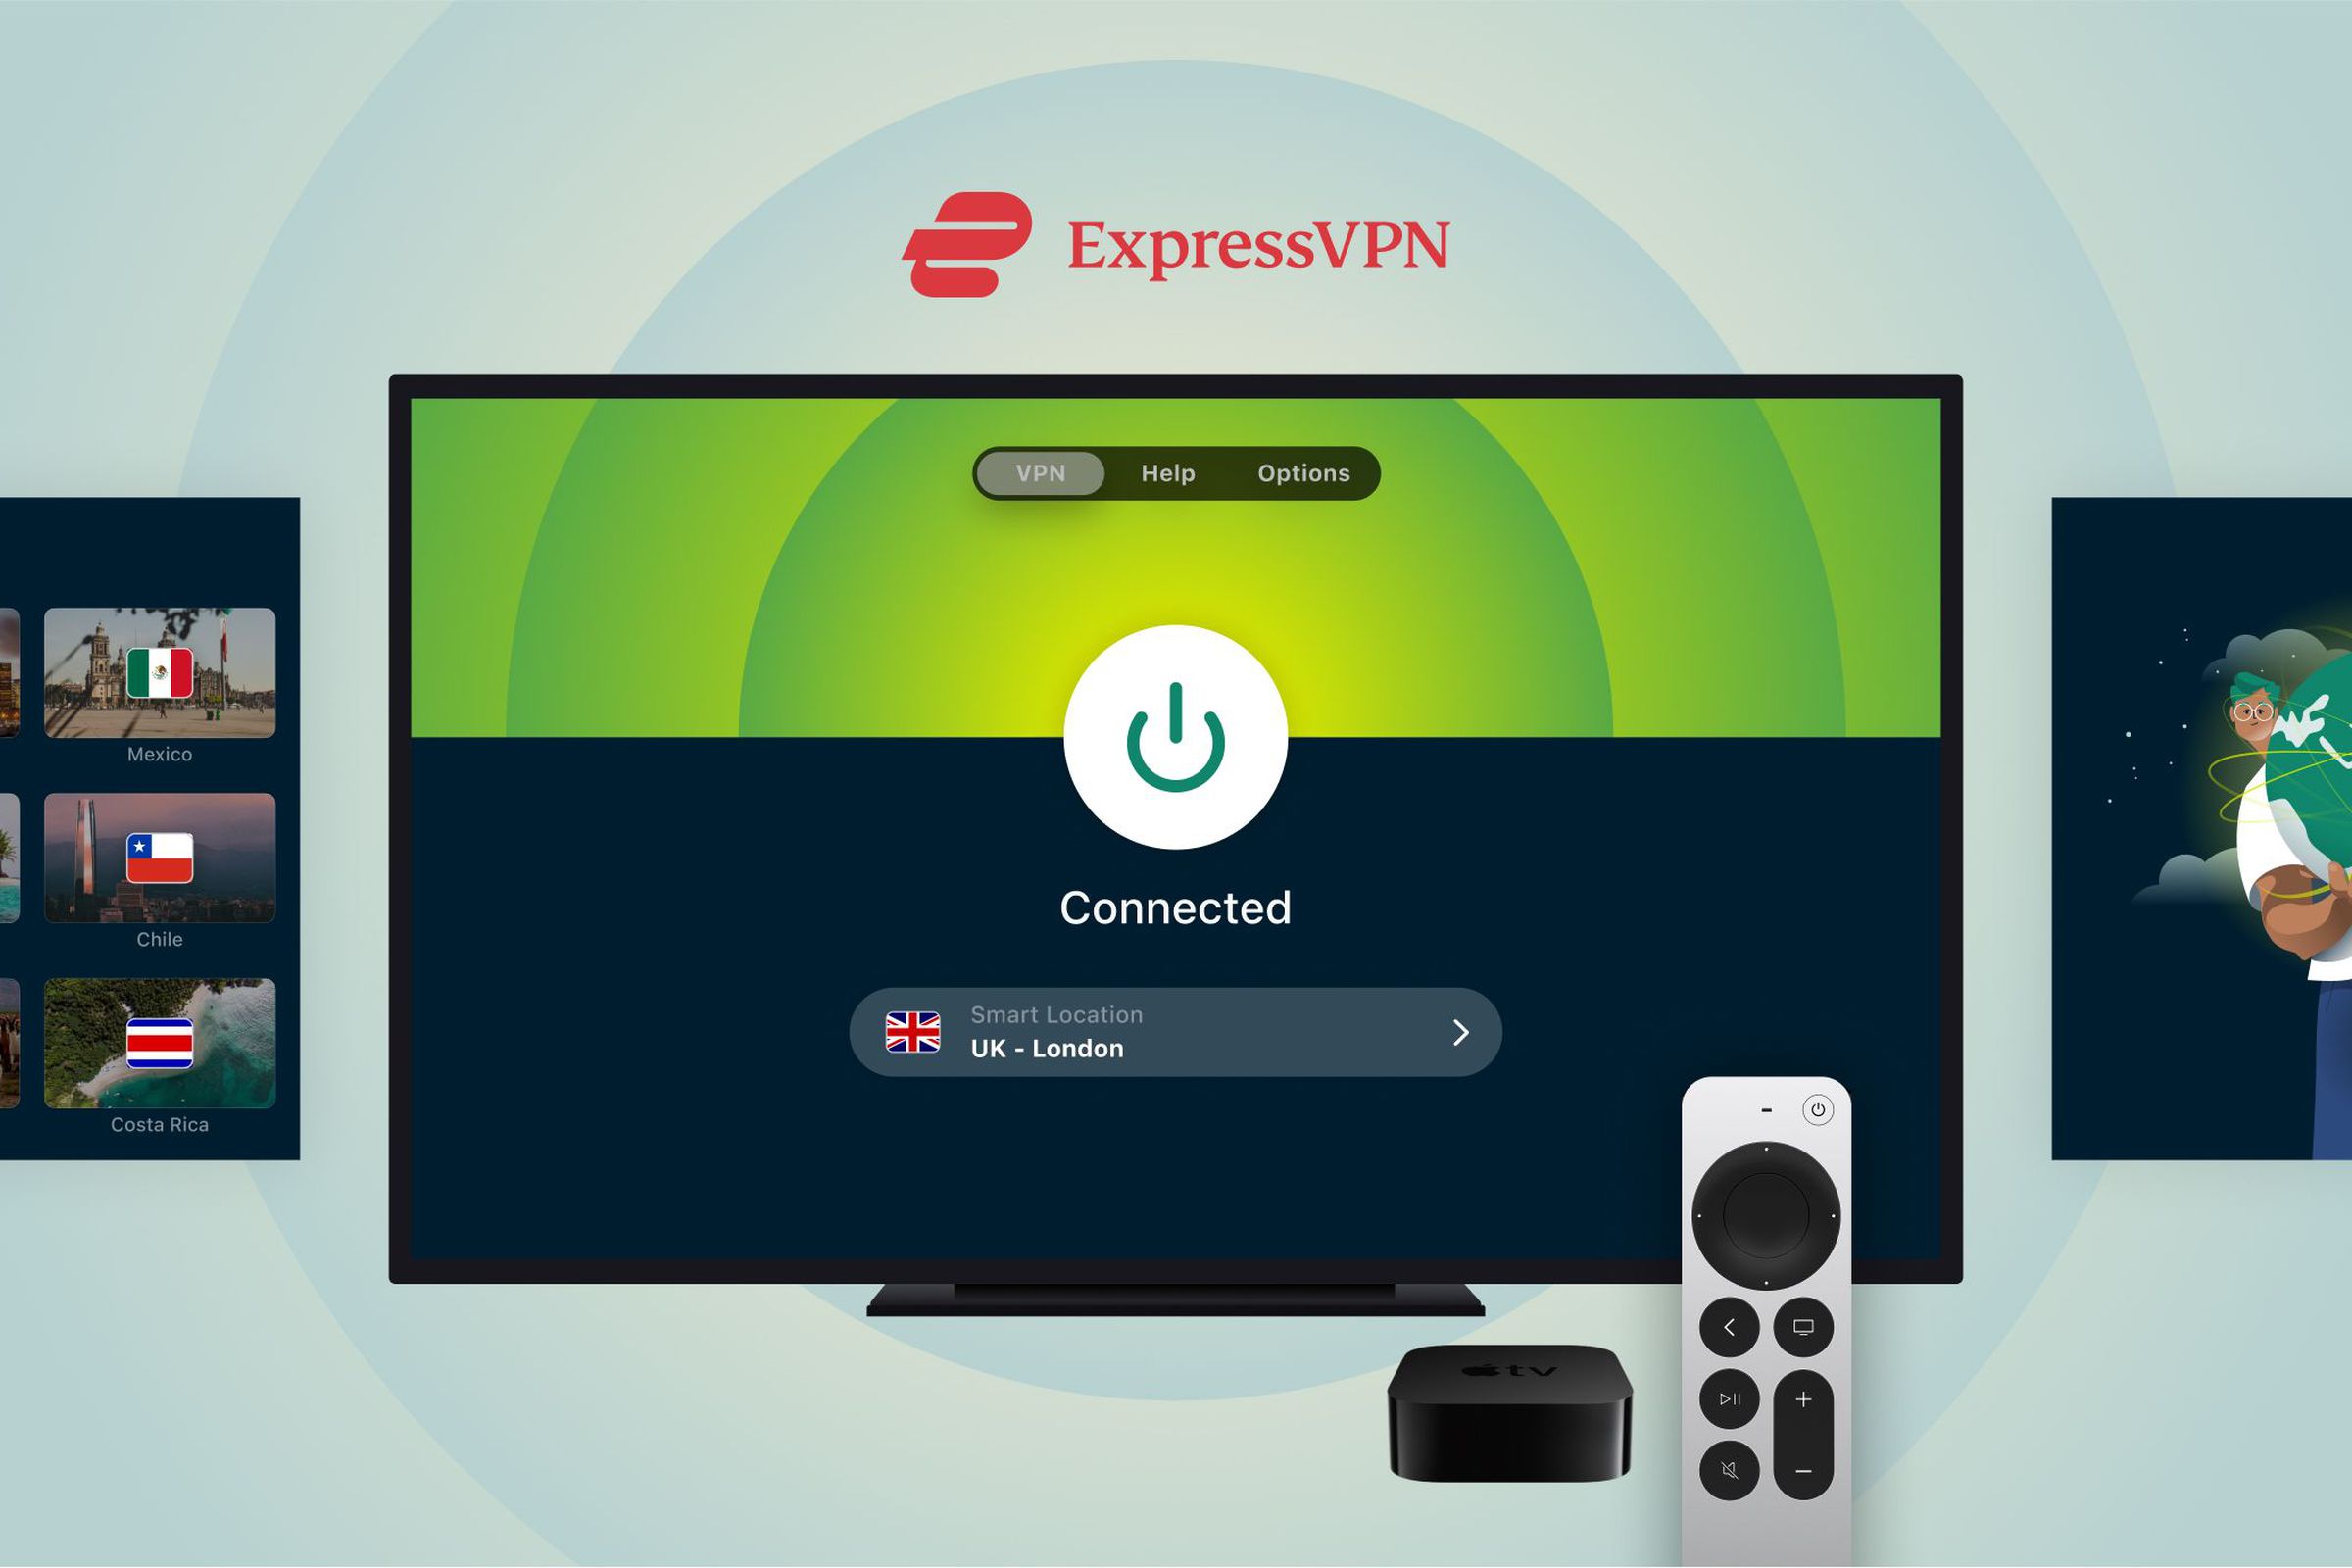 An image showing ExpressVPN running on an Apple TV.